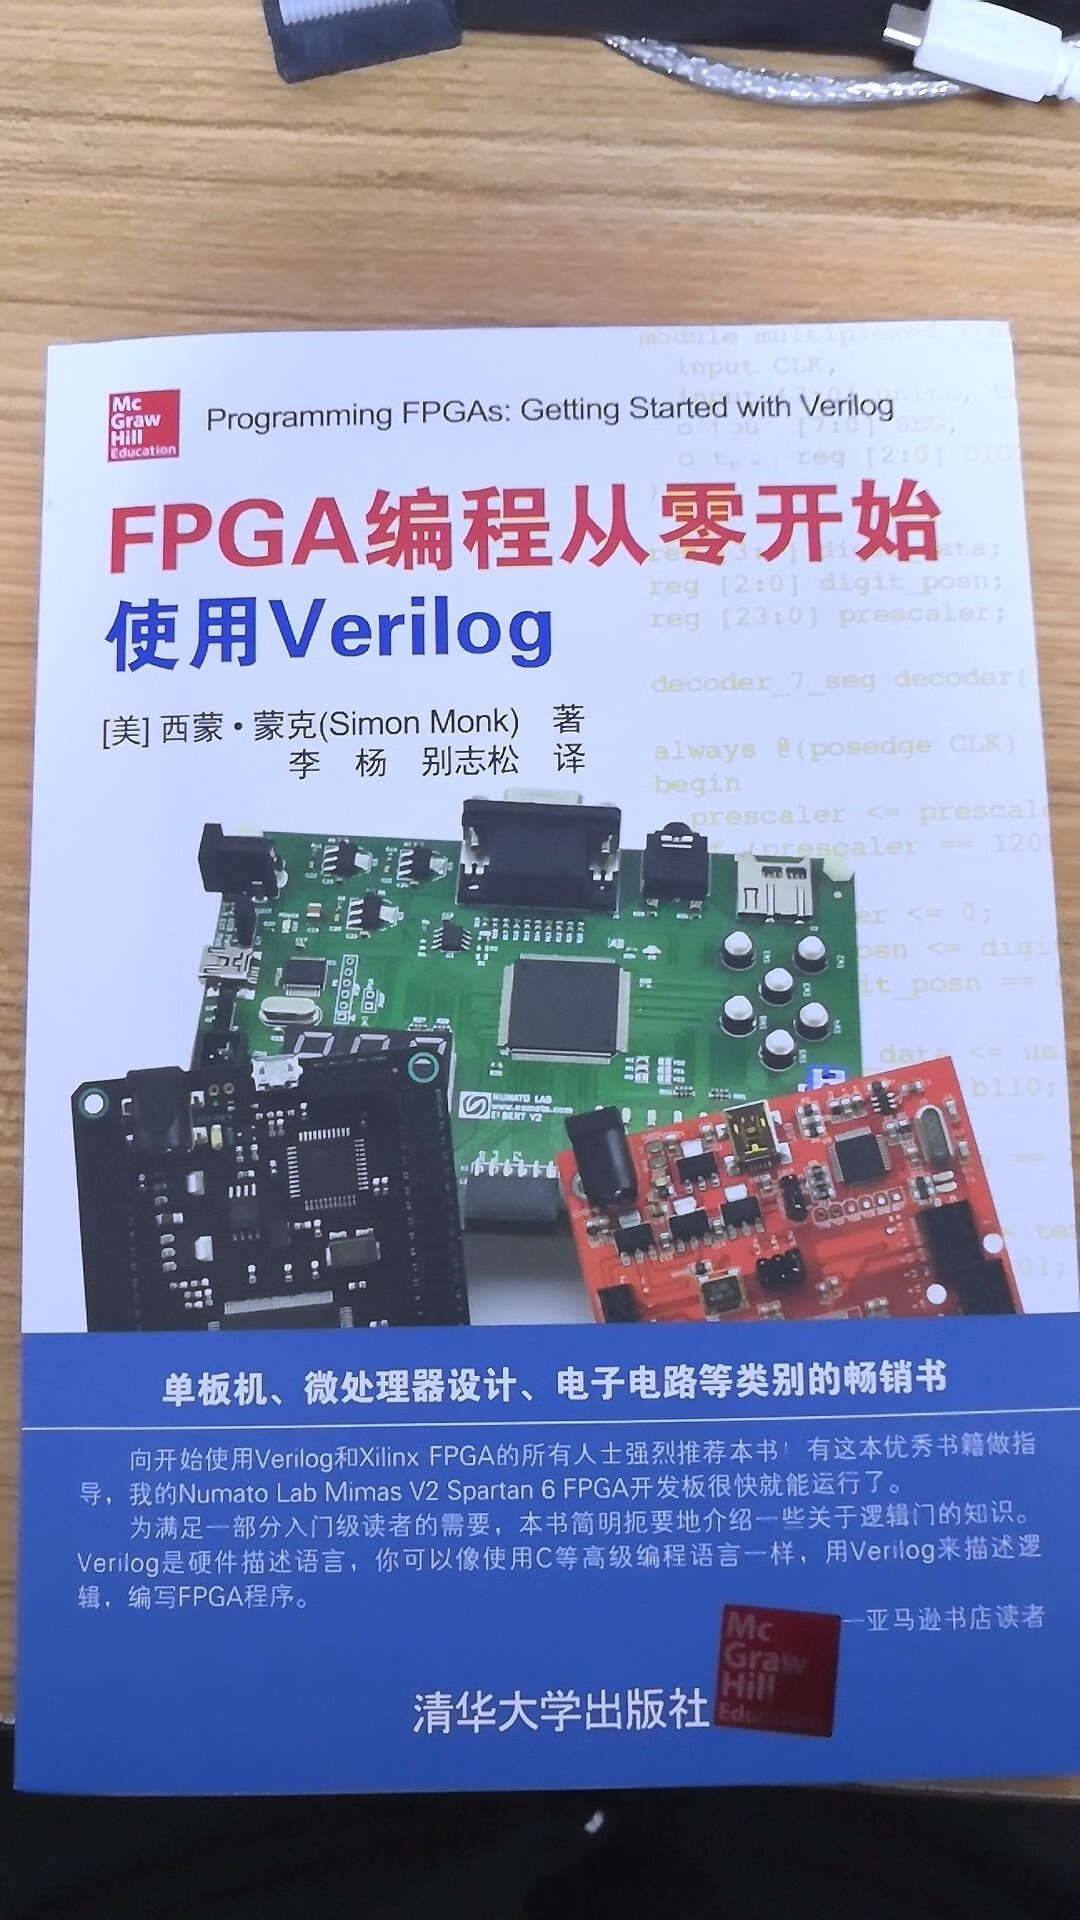 一般吧，对于想入门FPGA的来说可以那这本书了解了解试试水还可以。在深入就找更专业的书籍吧